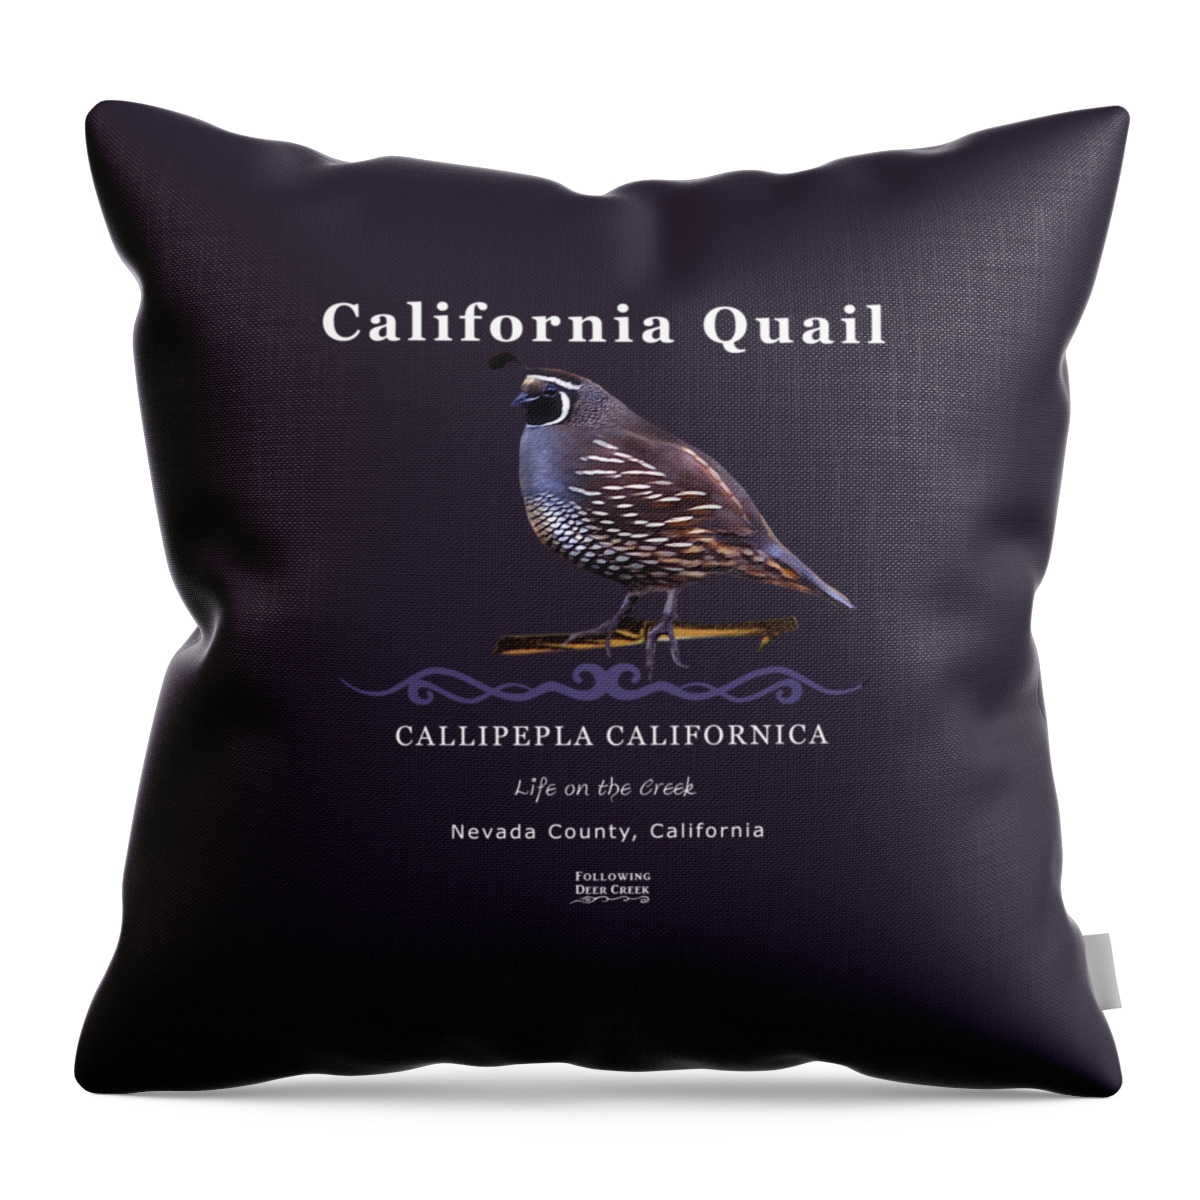 Quail Throw Pillow featuring the digital art California Quail #1 by Lisa Redfern